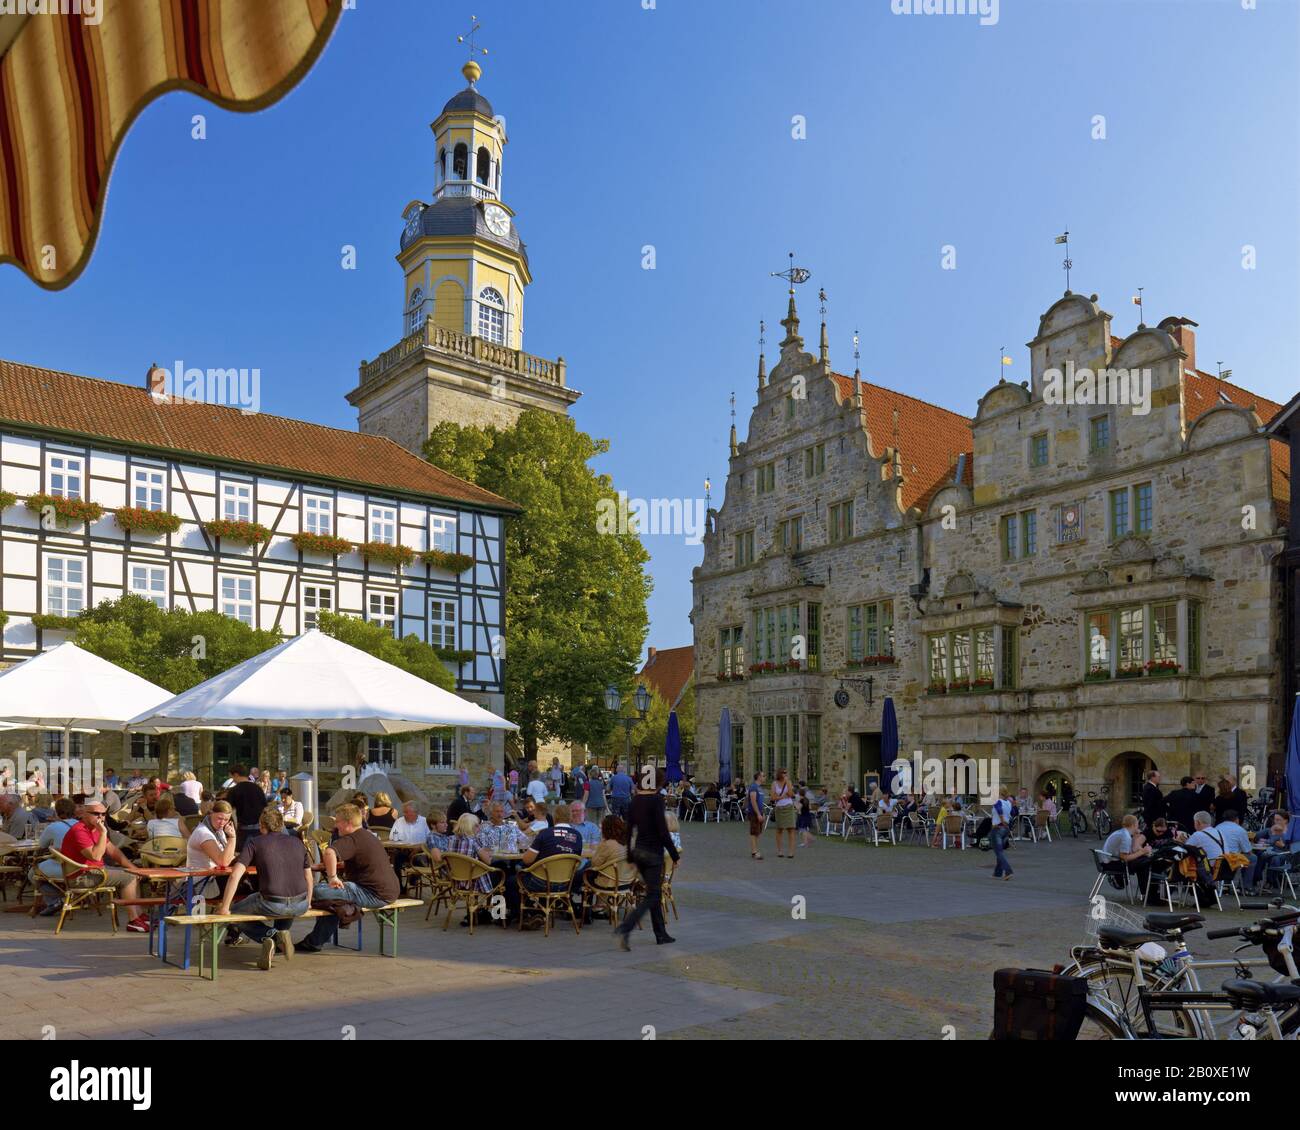 Place du marché avec l'église Saint-Nikolai et l'hôtel de ville à Rinteln, Weserbergland, Basse-Saxe, Allemagne, Banque D'Images